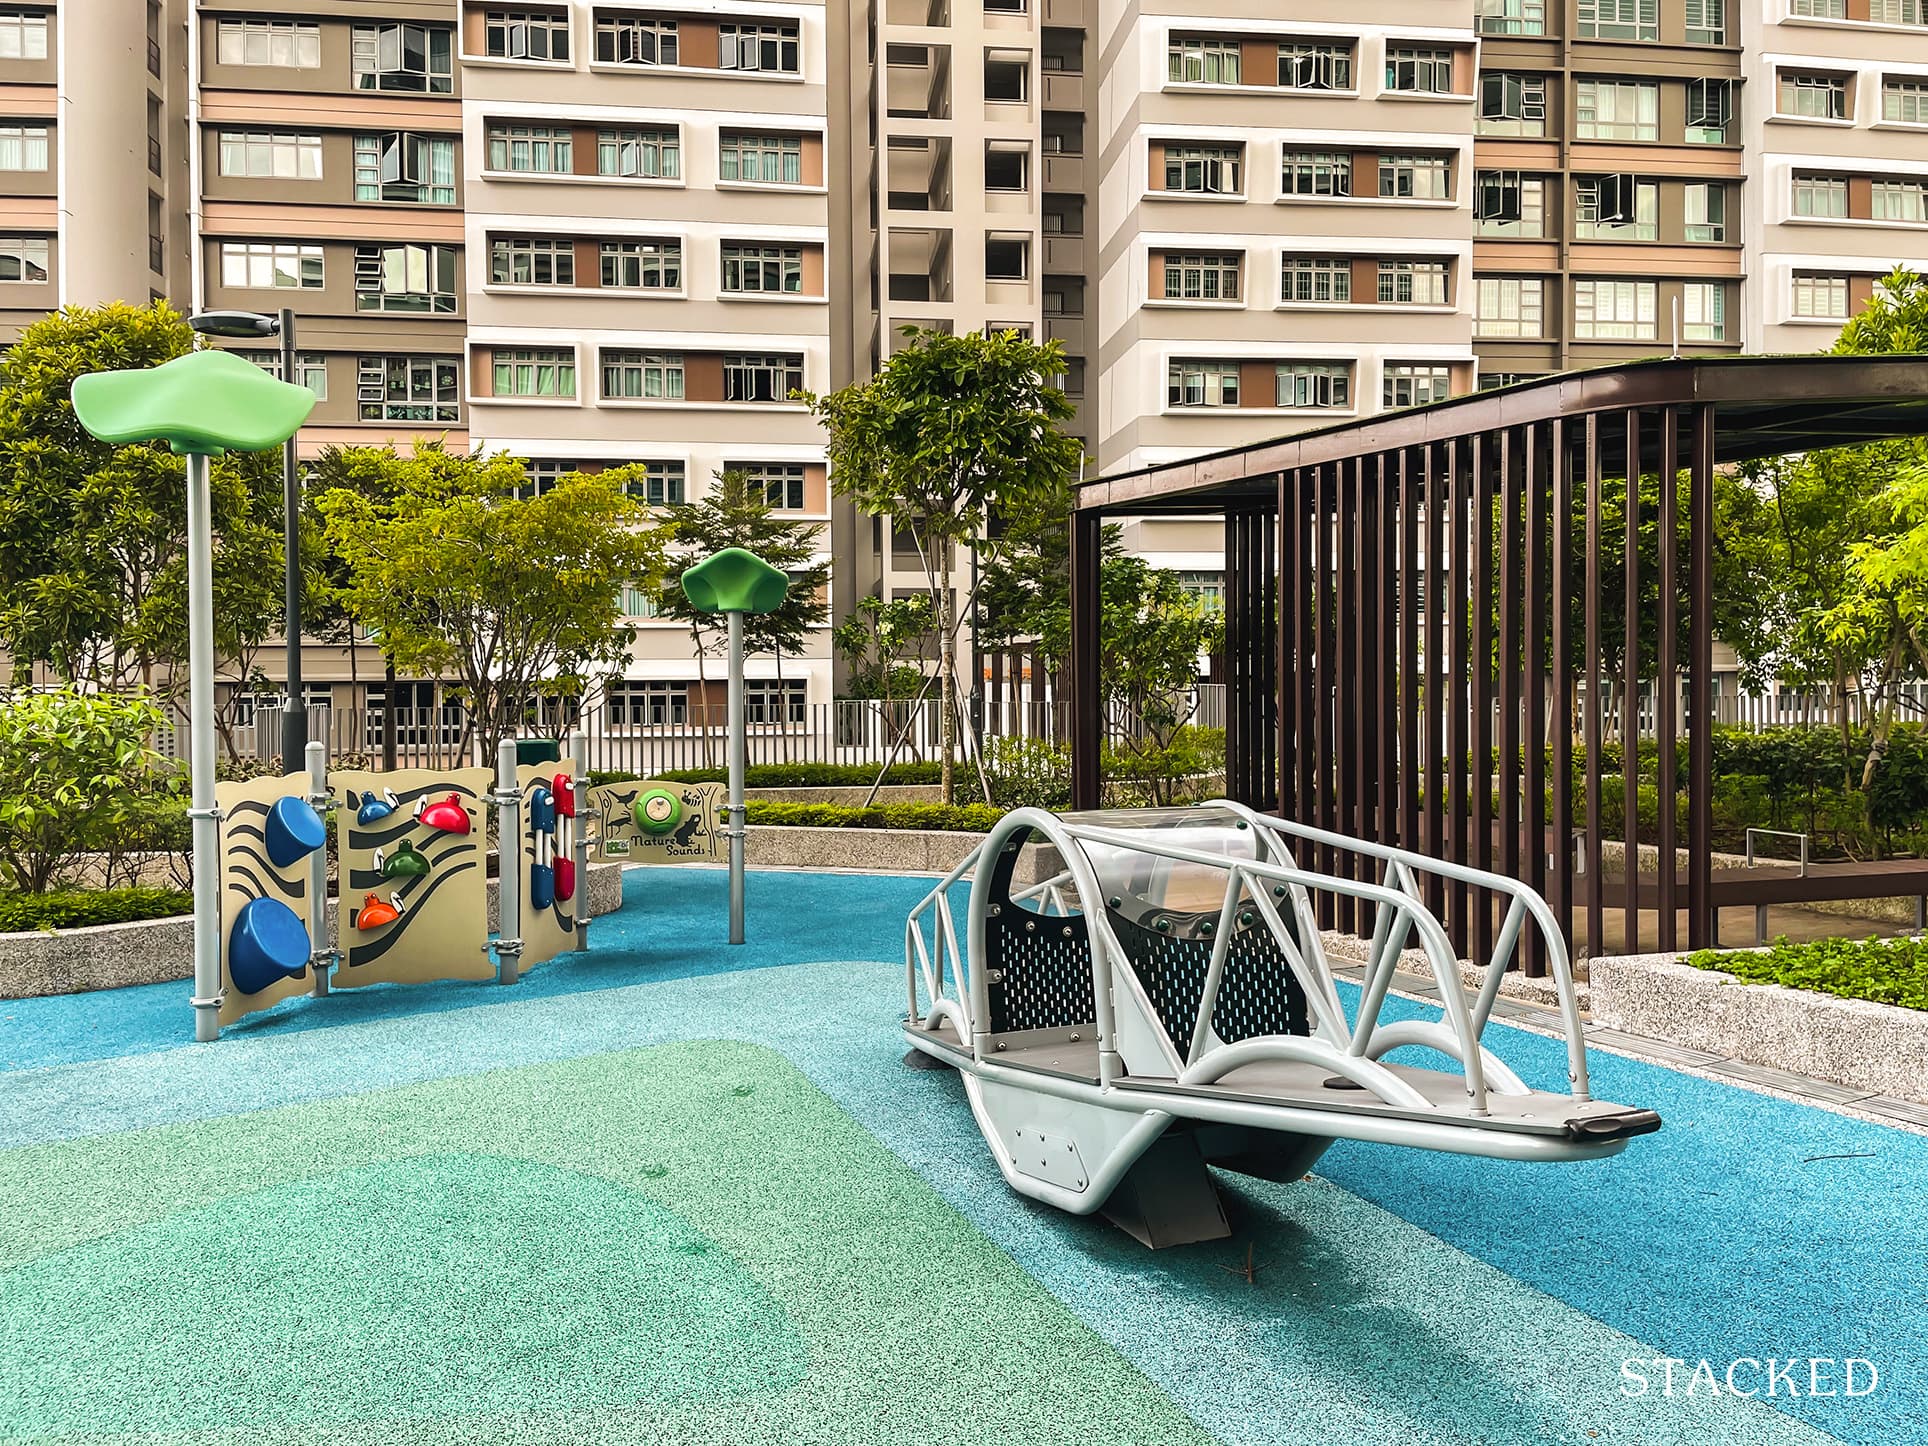 Hougang RiverCourt playground